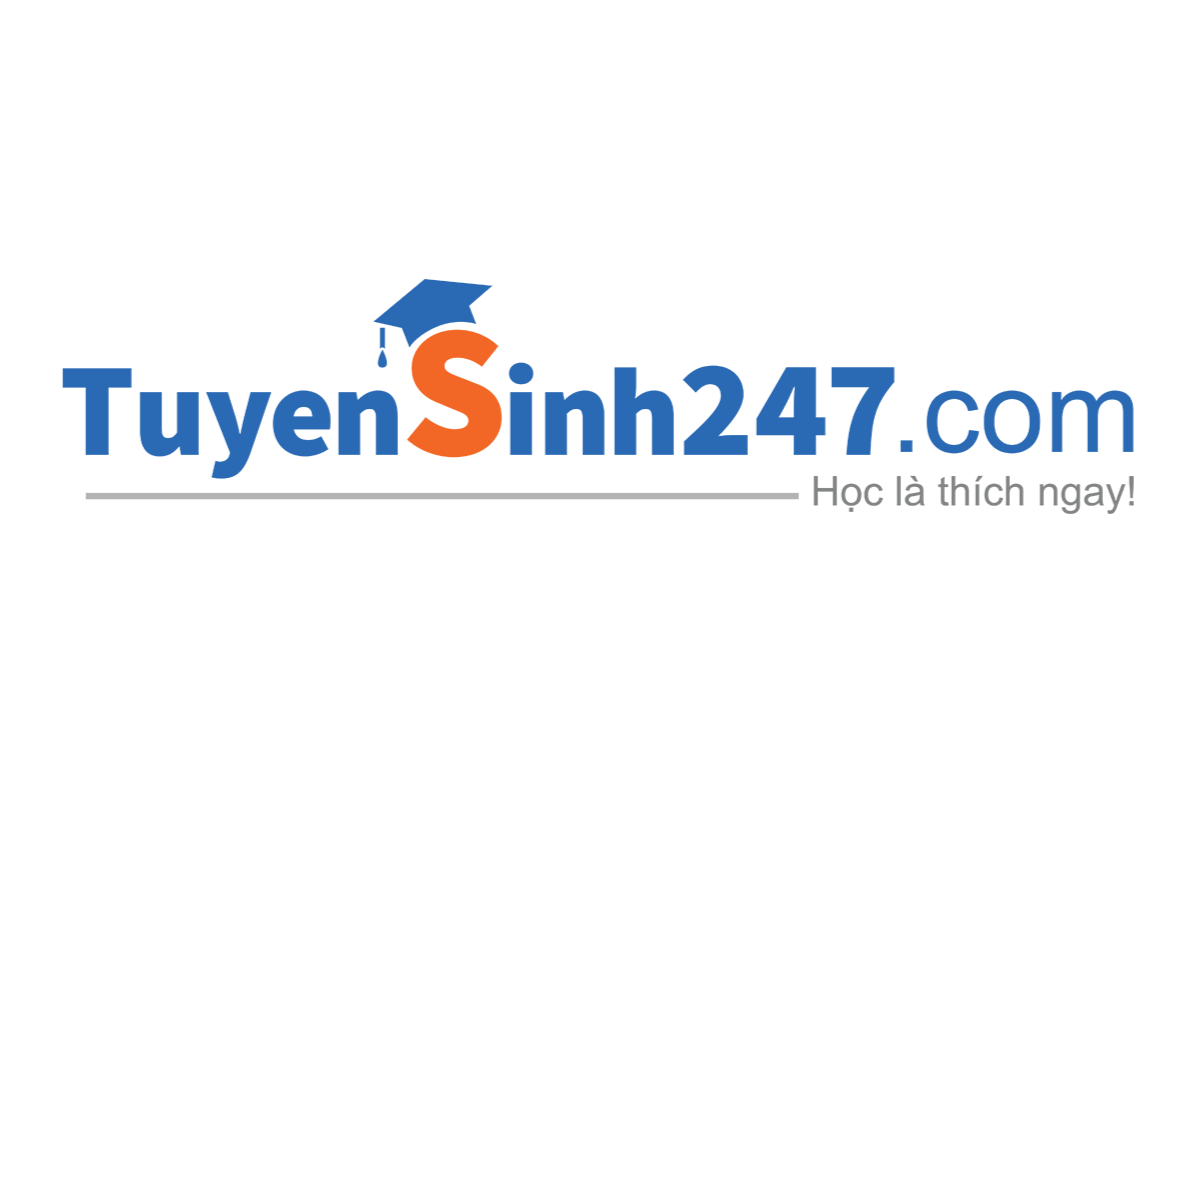 Tuyensinh247 - Học trực tuyến